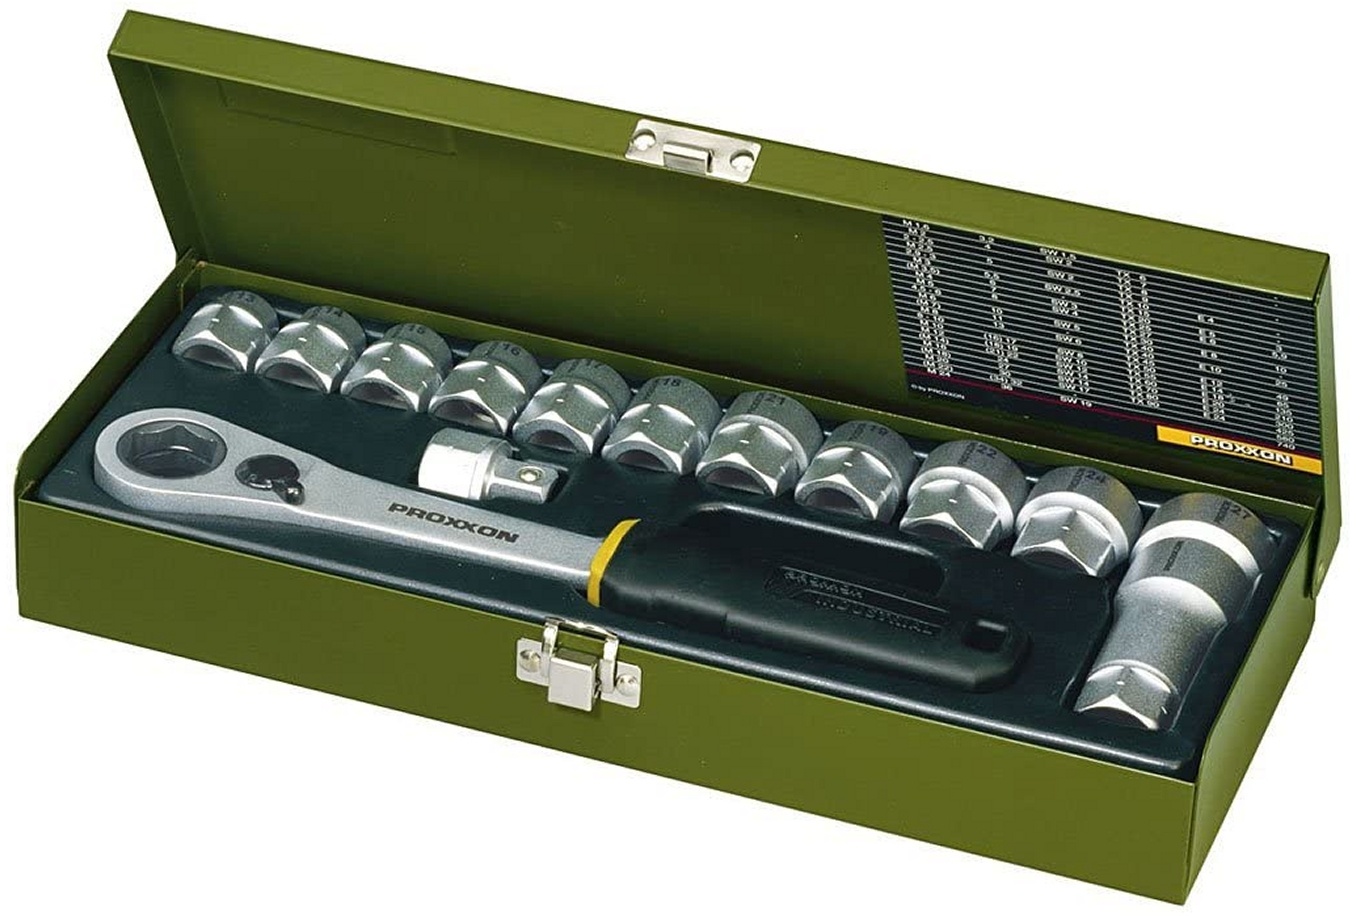 PROXXON 23604 Werkstatt Spezialsatz 13-27mm mit offener Ratsche 14 teilig